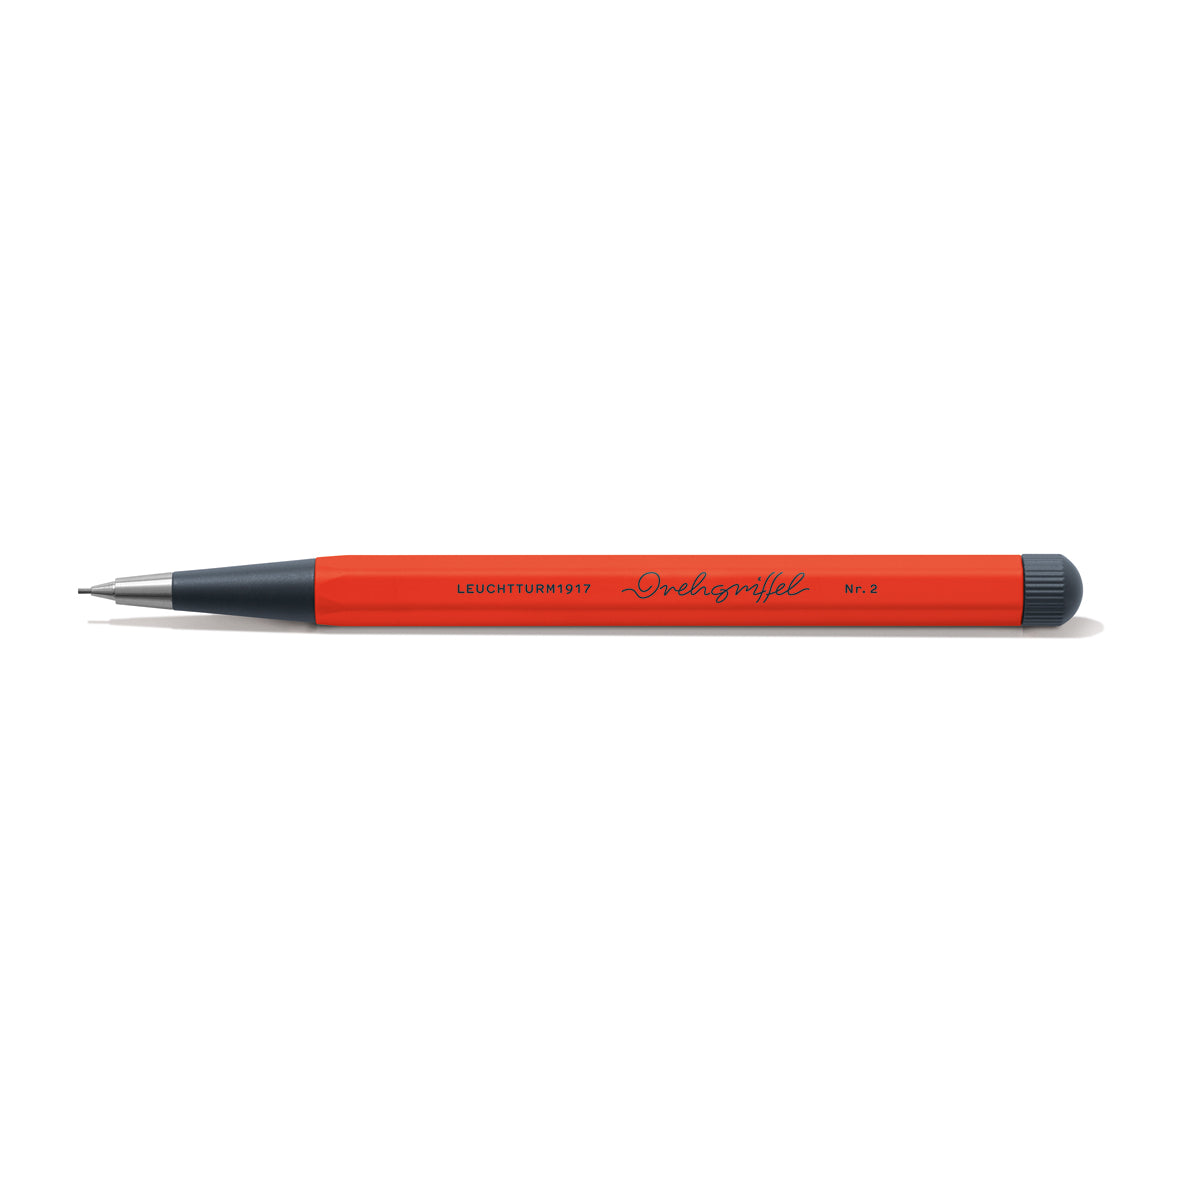 Re:combine Collection Drehgriffel Nr. 2 Mechanical Pencil